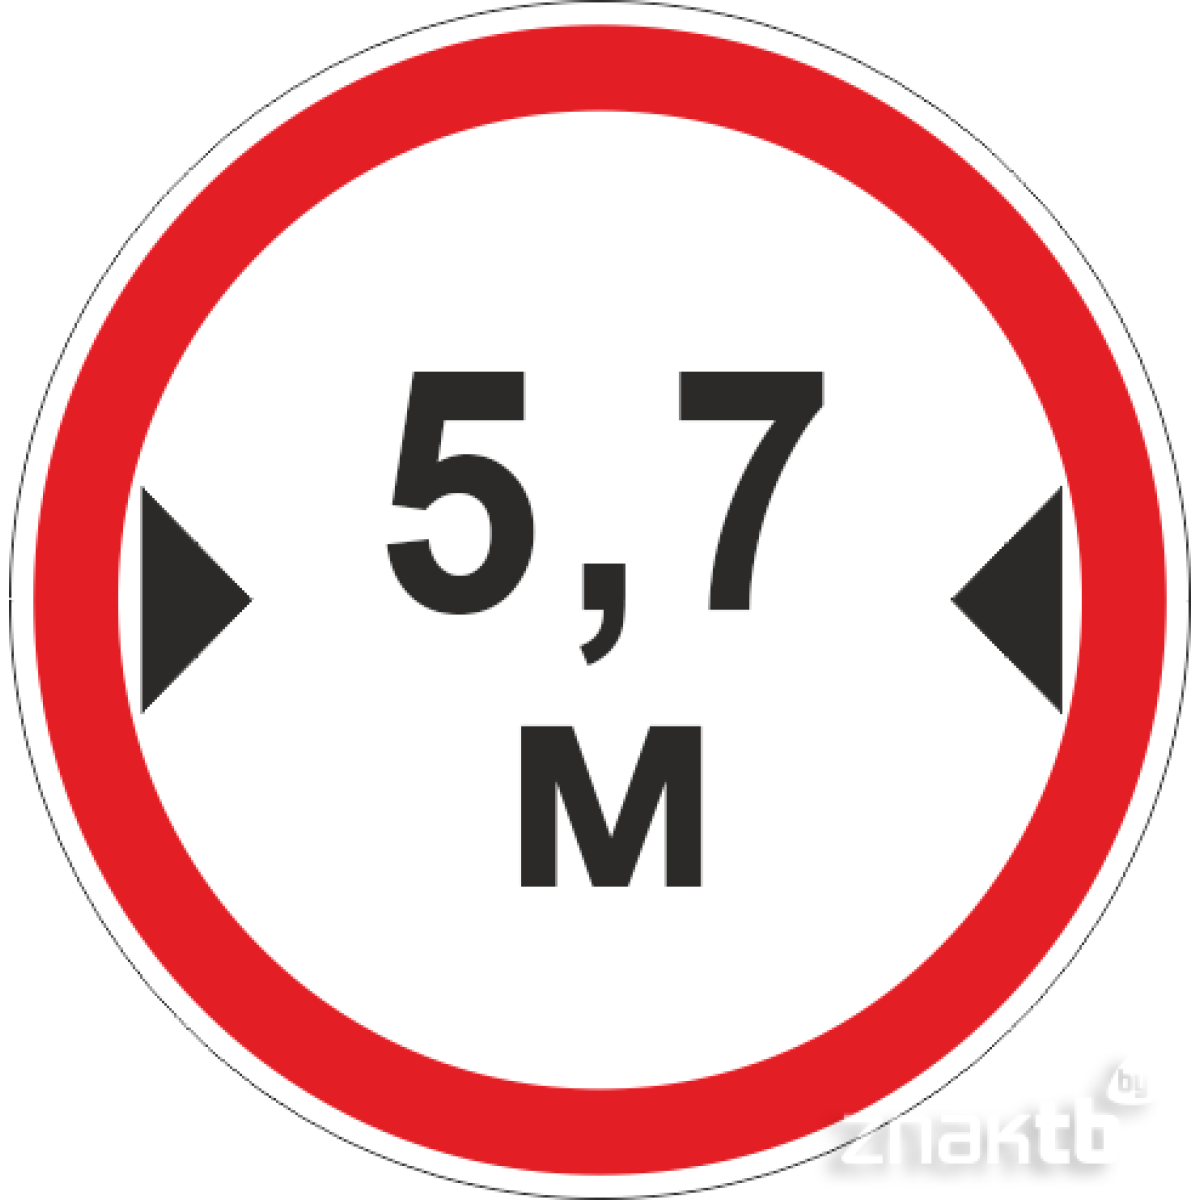 Знак Ограничение ширины проезда 5.7м